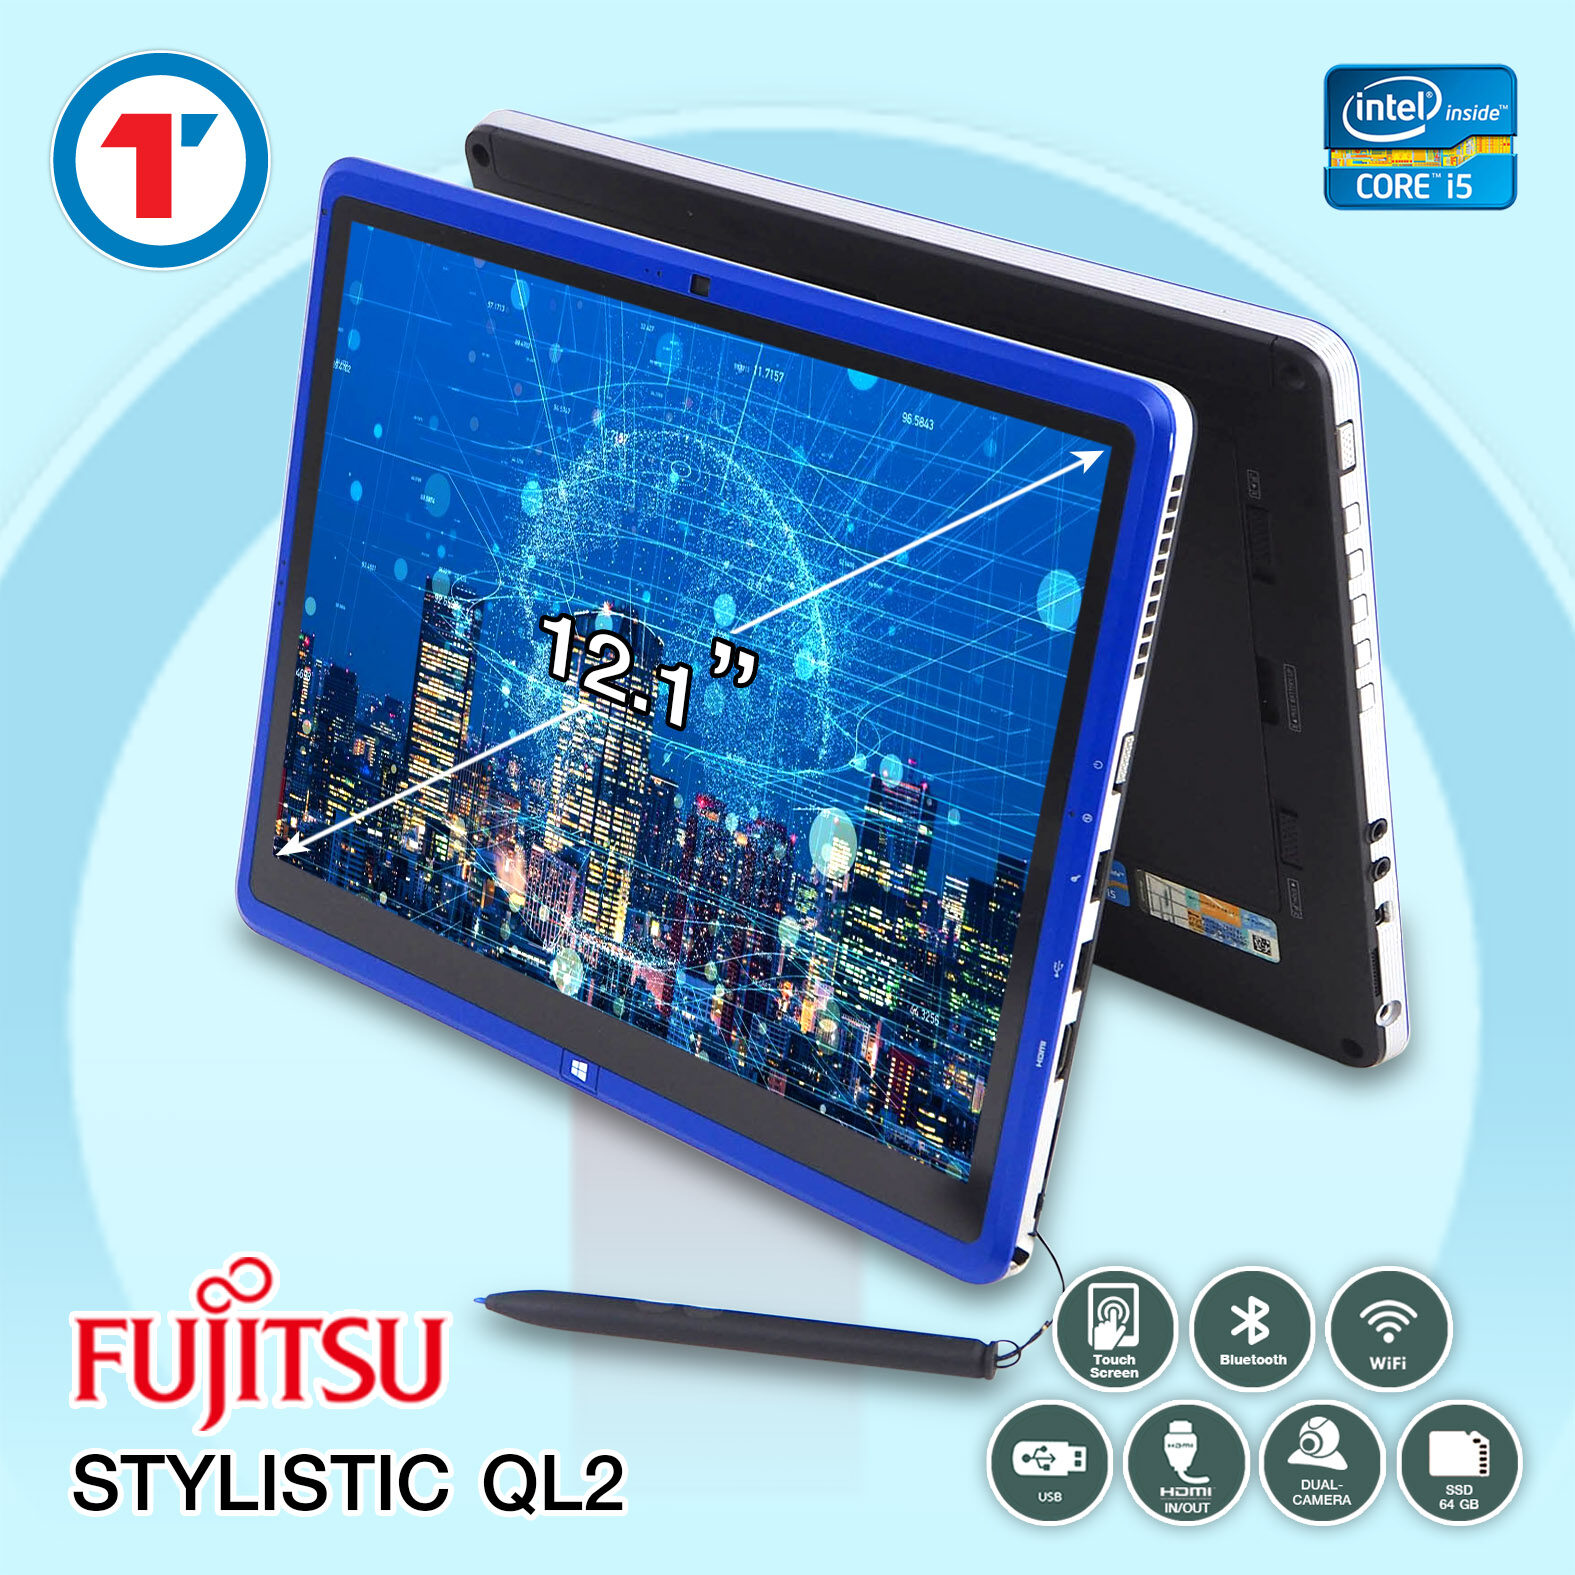 แท็บเล็ต Fujitsu Stylistic QL2 - Core i5 RAM 4 GB, SSD 64 GB แถมสูงสุด 4 รายการ กล้องในตัว โน๊ตบุ๊คมือสอง สภาพดี!! มีประกัน พร้อมบริการหลังการขาย!!! By Totalsolution